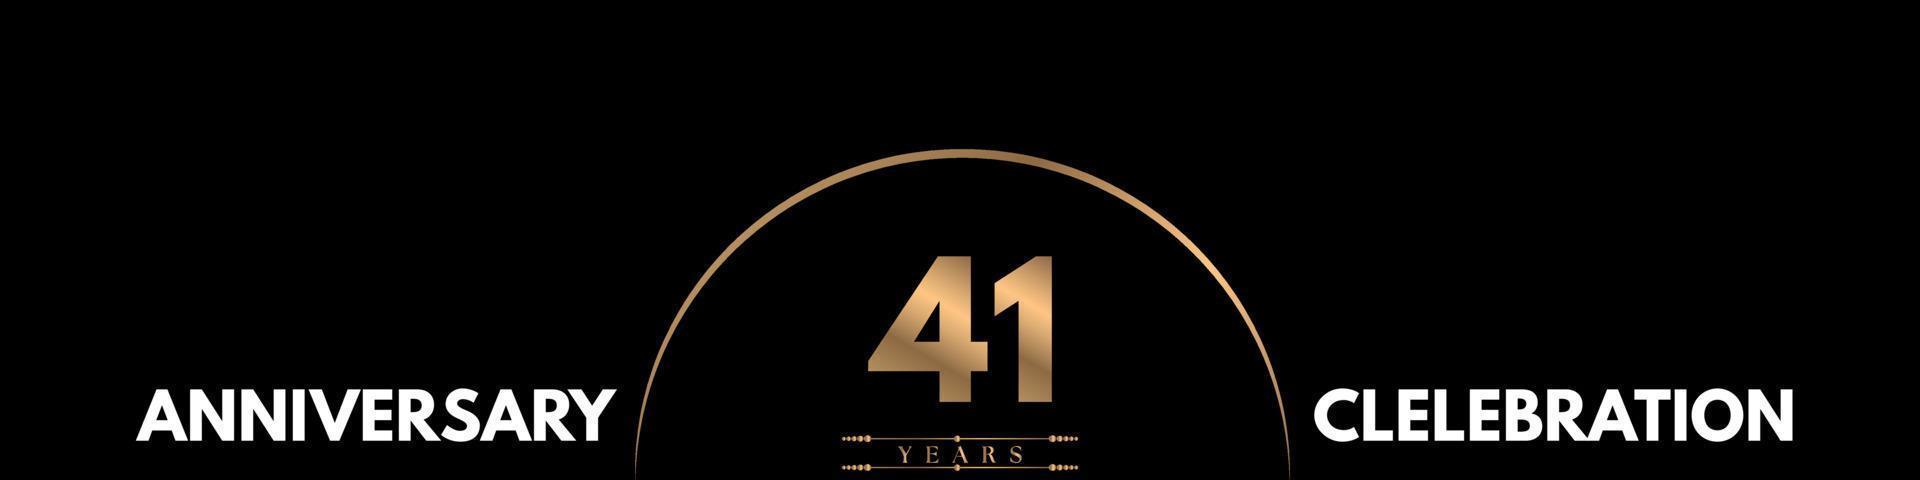 Celebración del aniversario de 41 años con un número elegante aislado en fondo negro. diseño vectorial para tarjeta de felicitación, fiesta de cumpleaños, boda, fiesta, ceremonia, tarjeta de invitación. vector